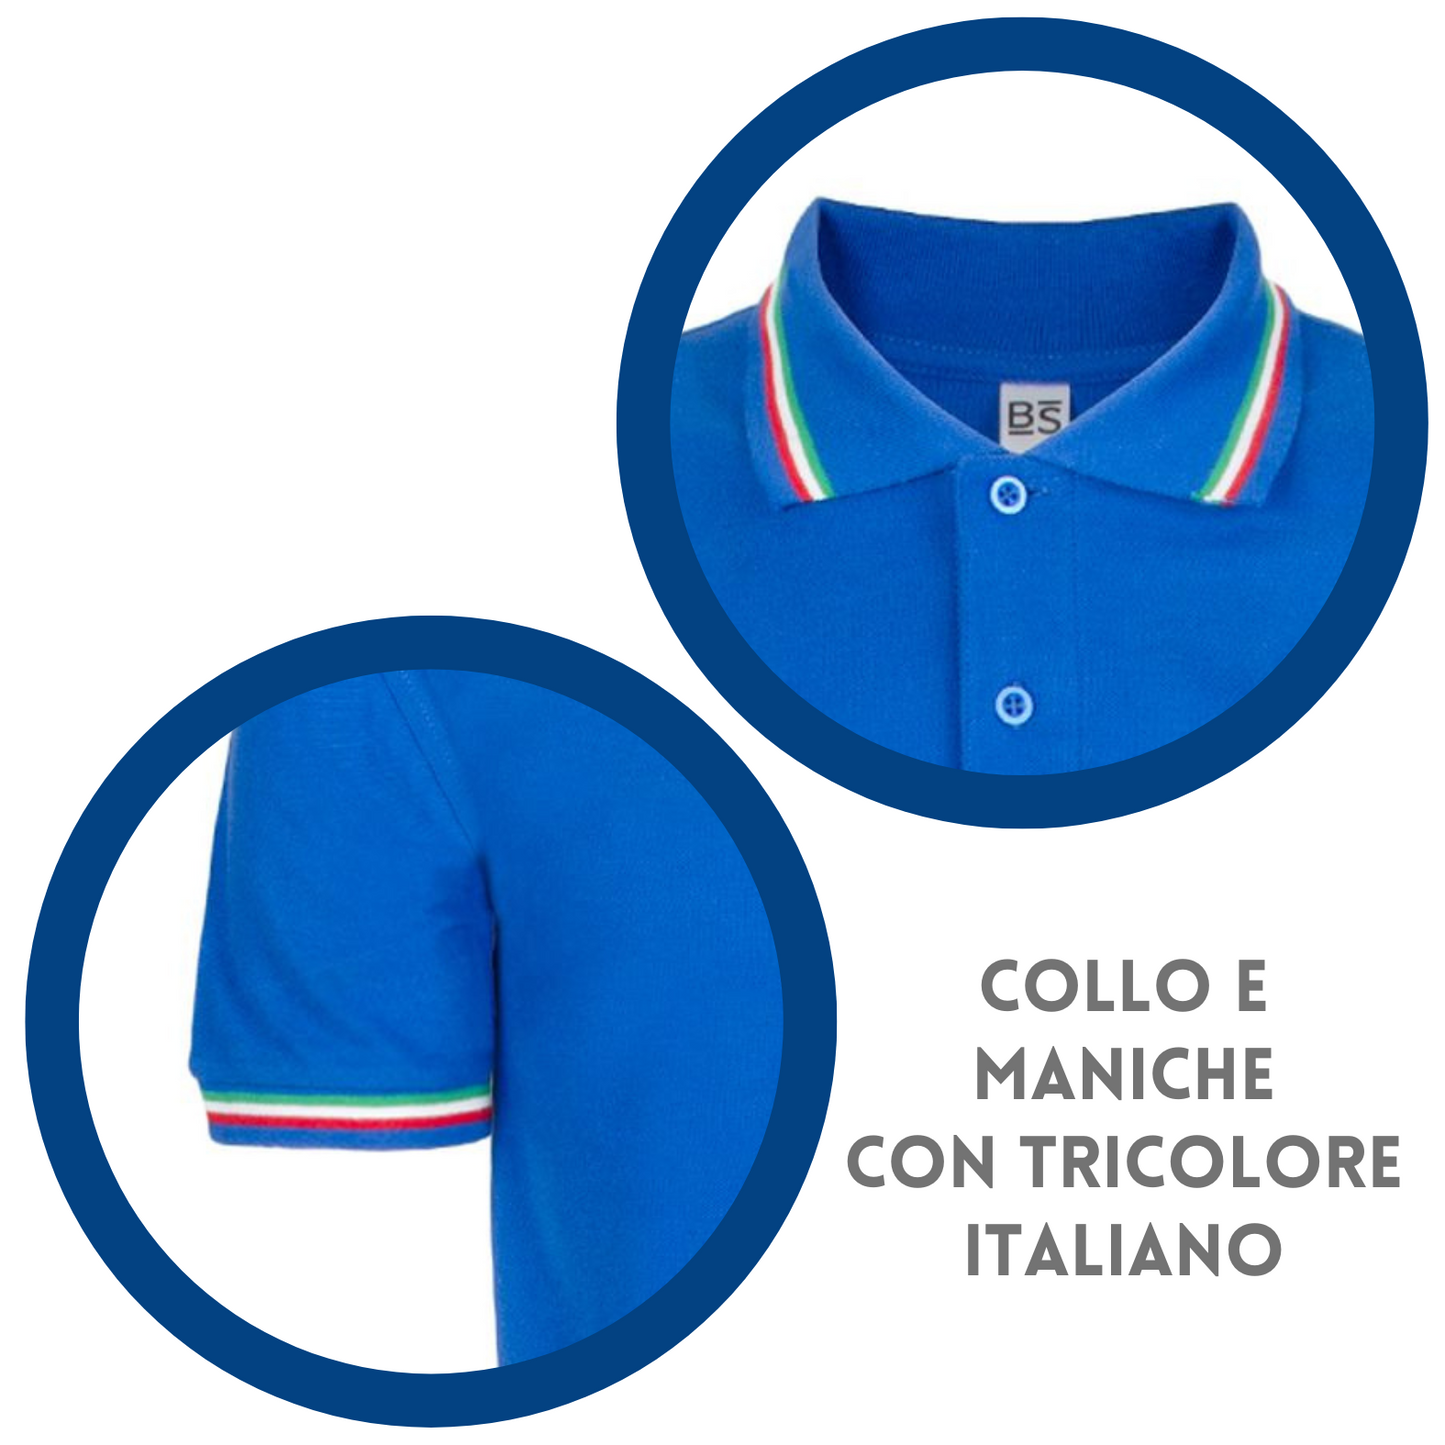 Polo personalizzate unisex con tricolore italiano | Cod. BS200